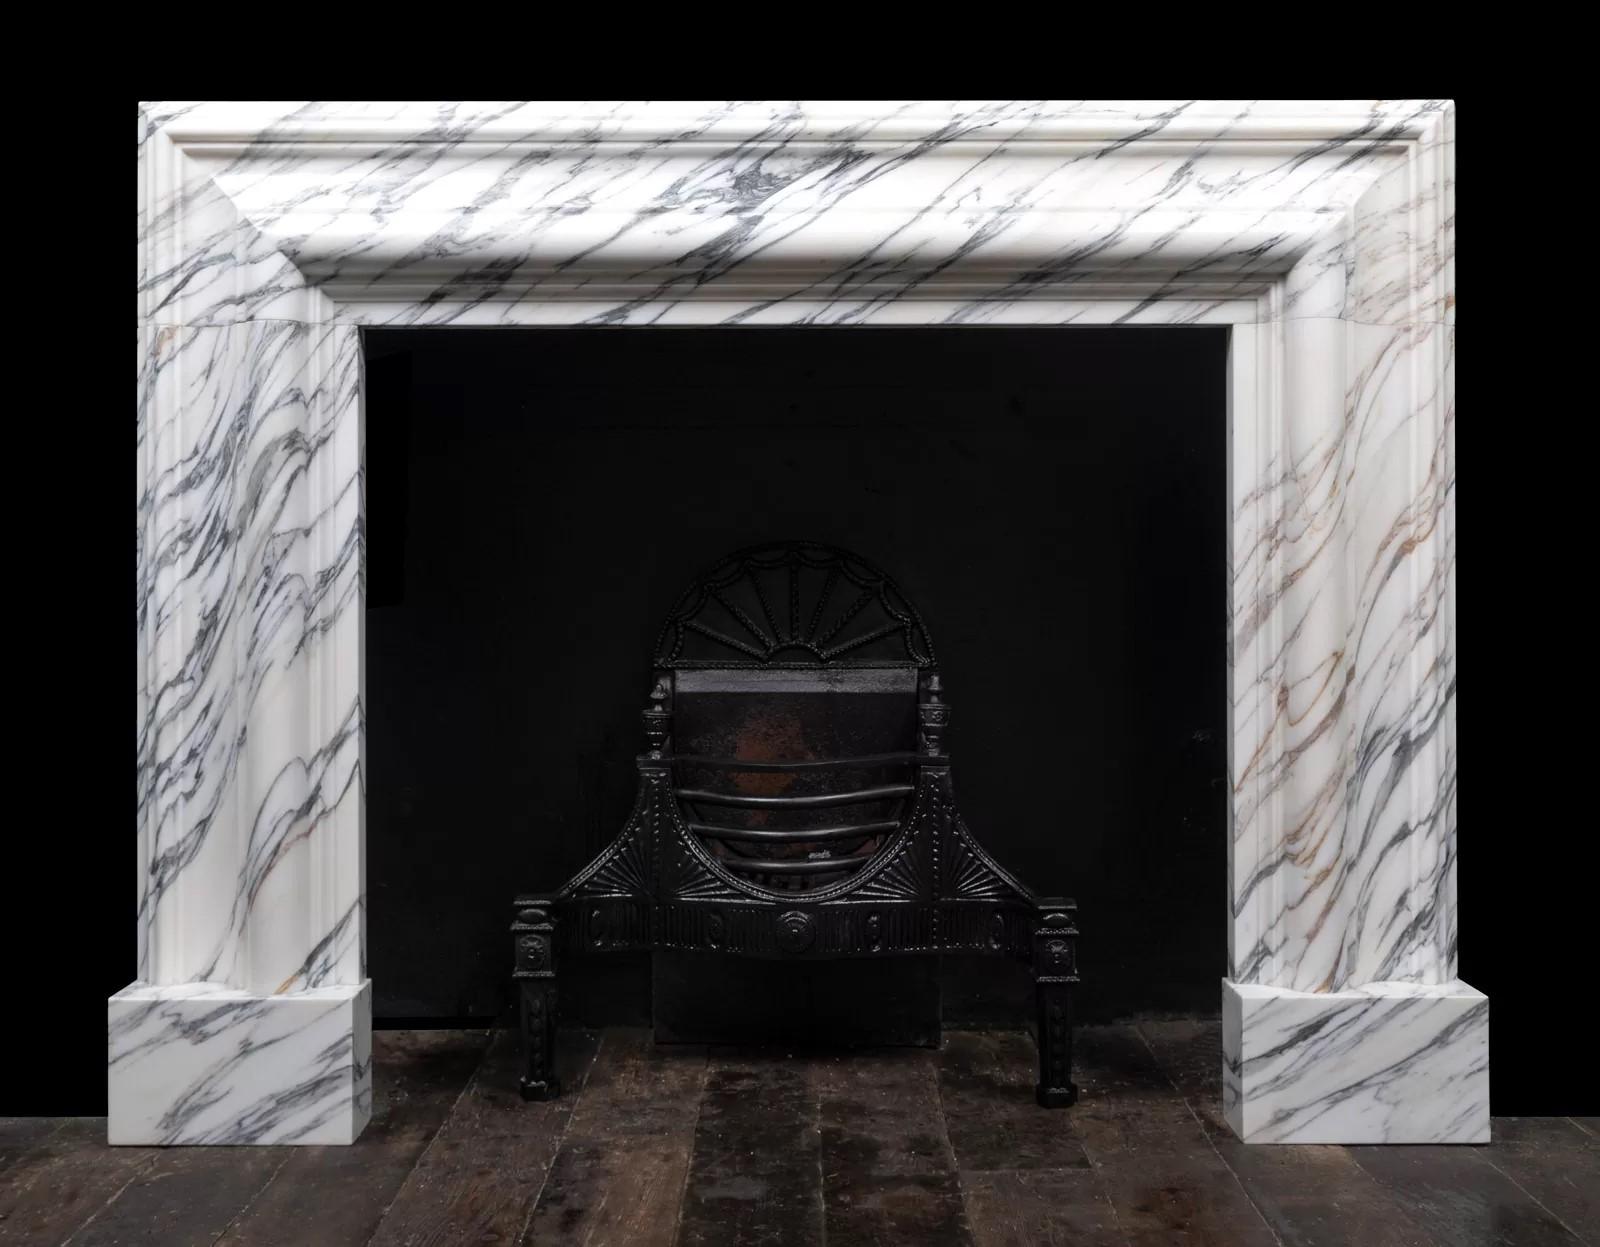 Un grand cadre de cheminée à boudin aux proportions généreuses, réalisé par Ryan and Smith.

L'imposant cadre moulé à bolection de 12″ (300 mm) de large repose sur des plinthes carrées simples.
Sculpté dans un bloc de marbre italien Arabescato